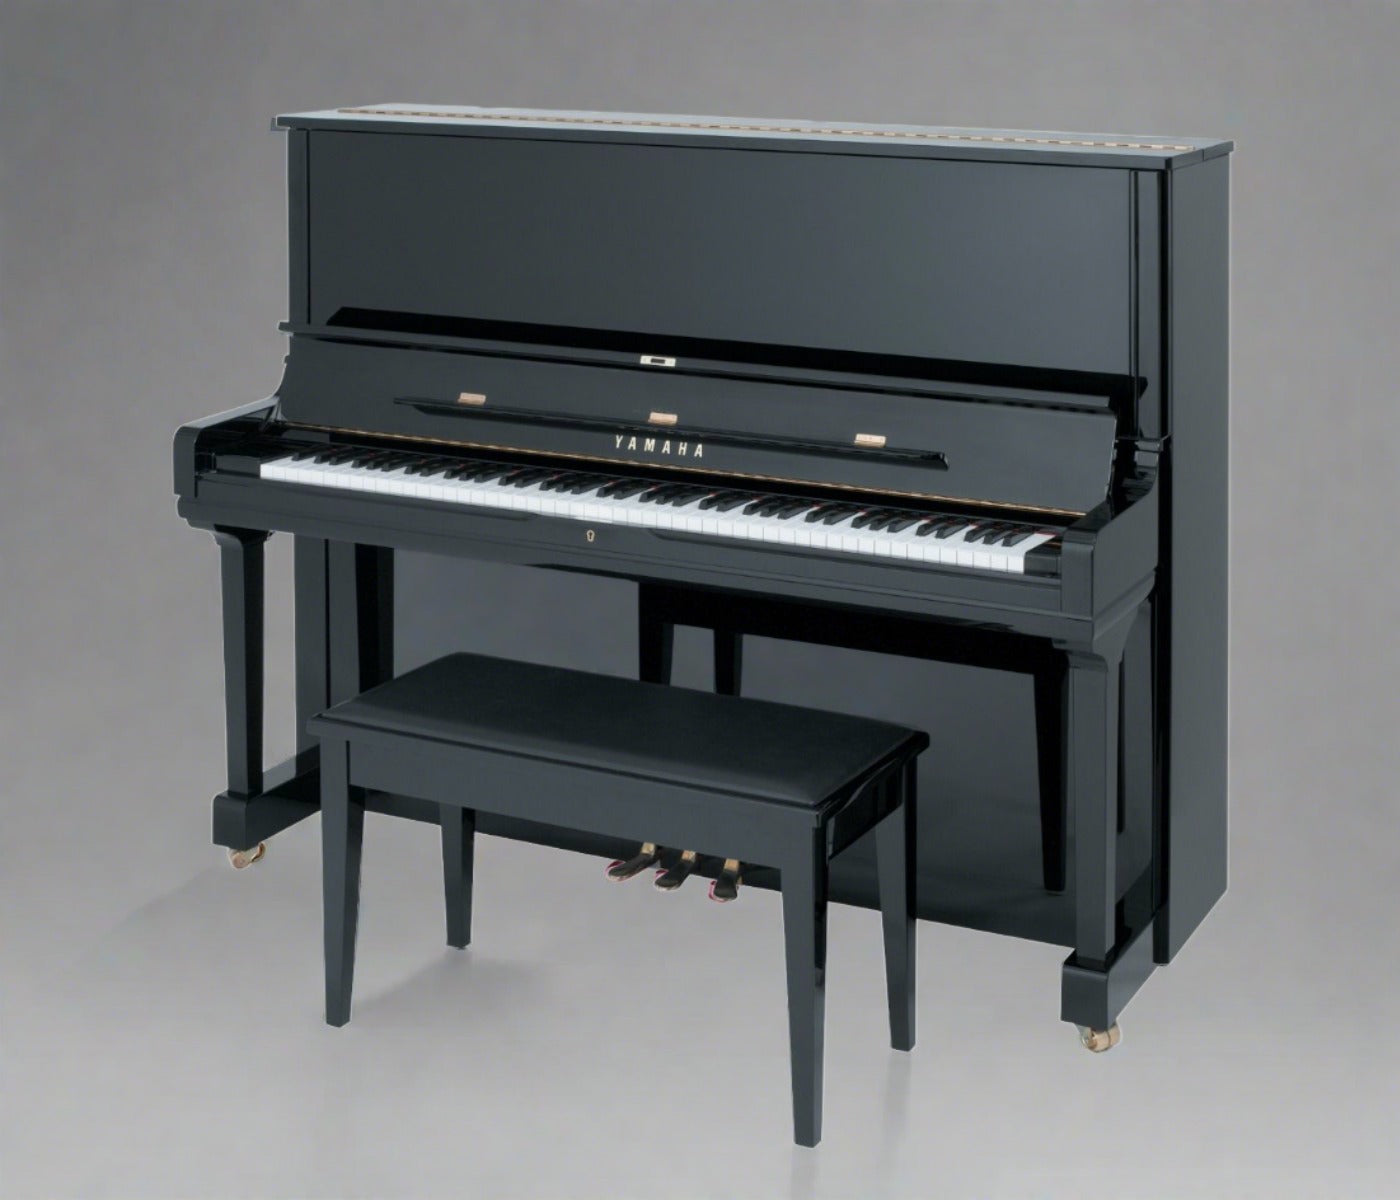 Yamaha YUS3 52" Professional Upright Piano In Polished Ebony